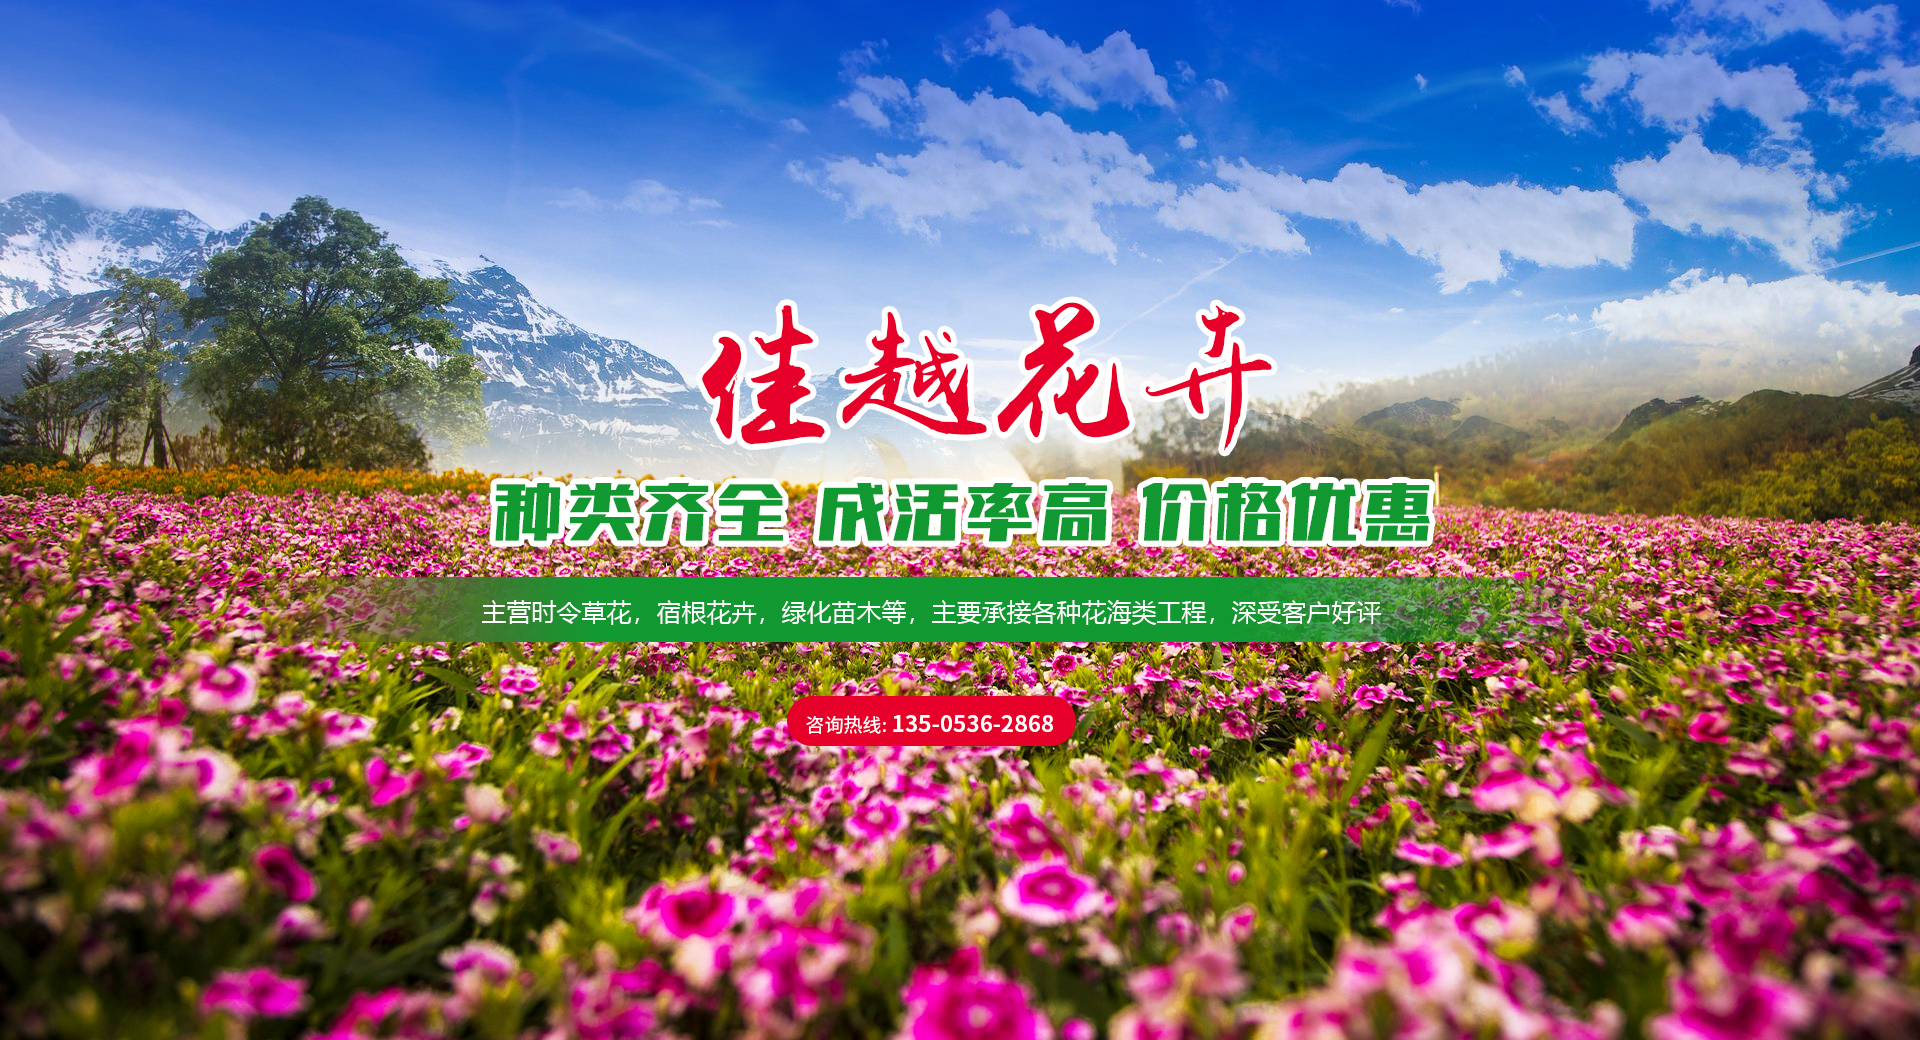 青州市佳越花卉苗木种植专业合作社